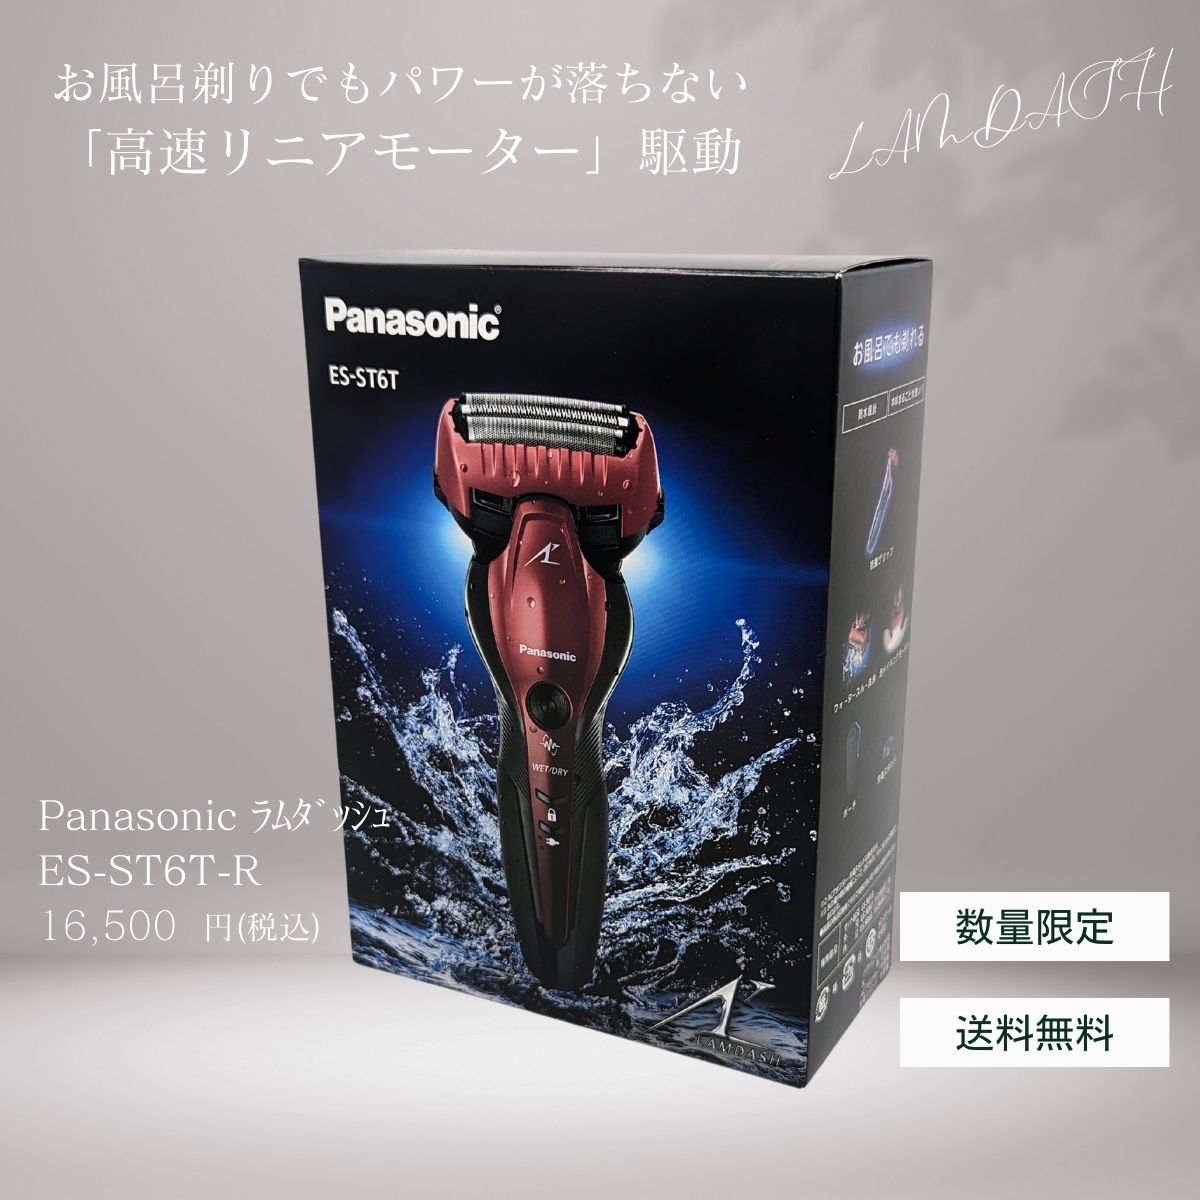 【睡眠時間】Panasonic ES-ST6T-R ラムダッシュ 電気シェーバー 赤 脱毛・除毛